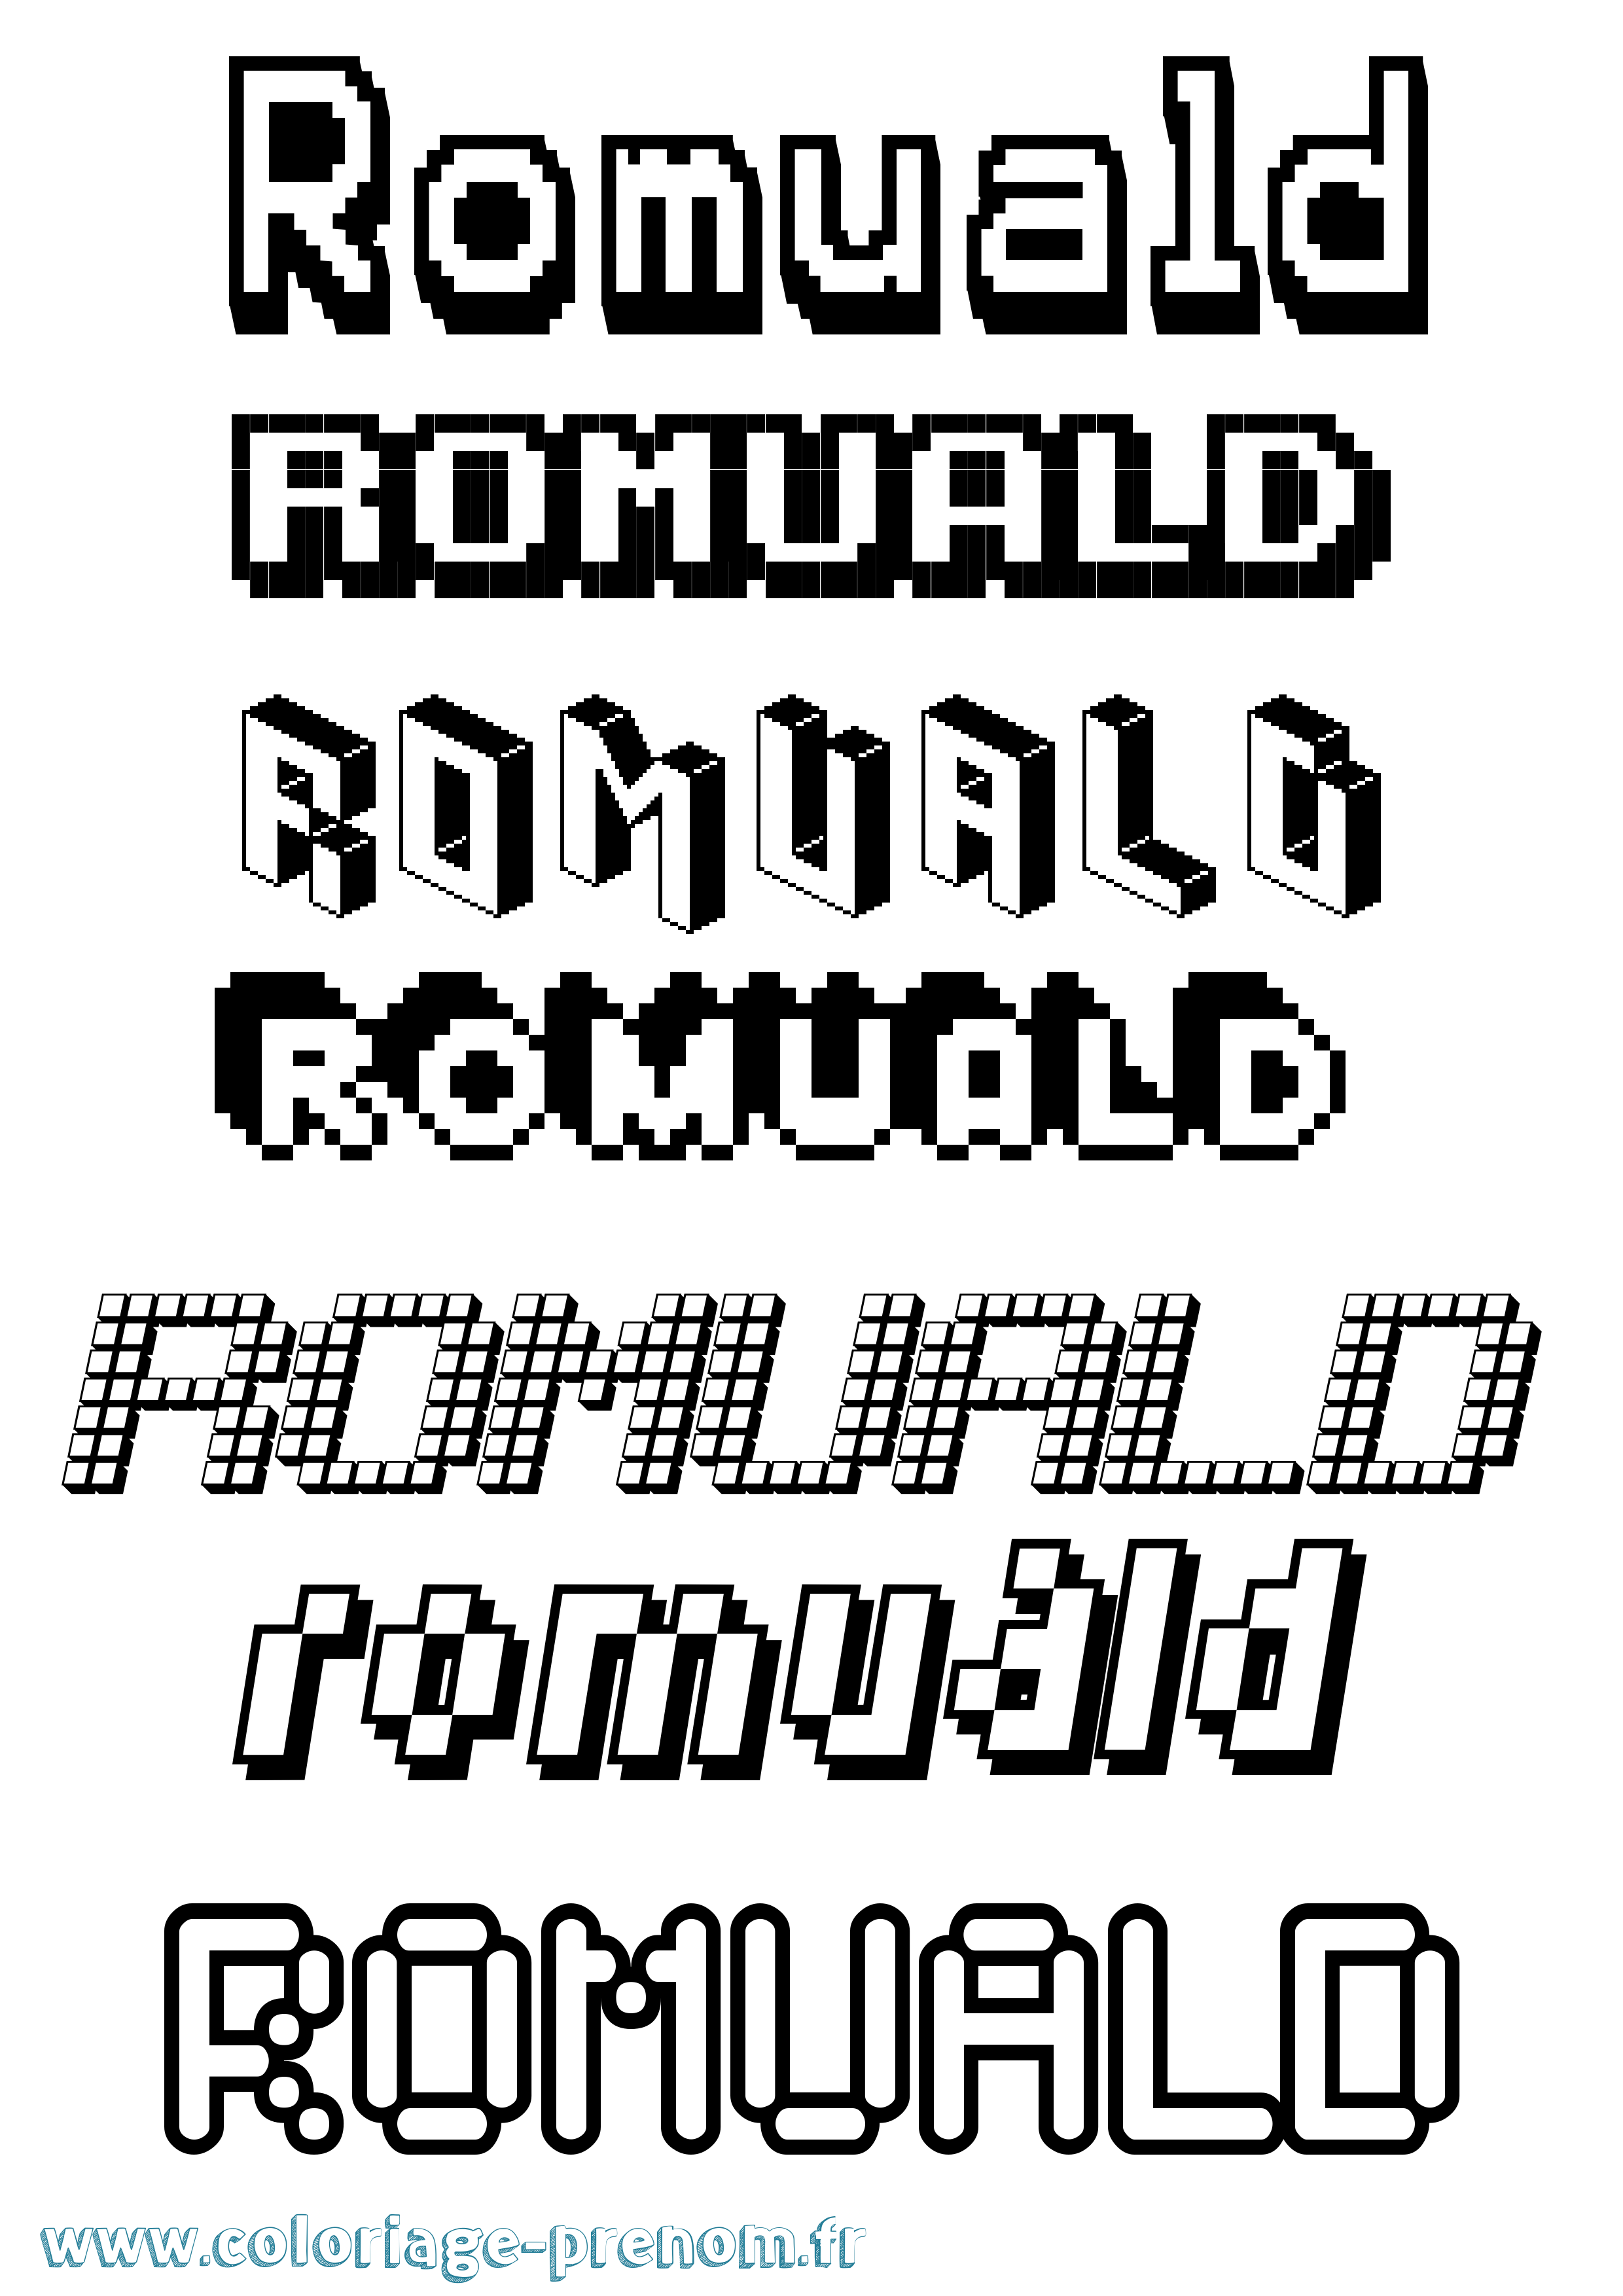 Coloriage prénom Romuald Pixel